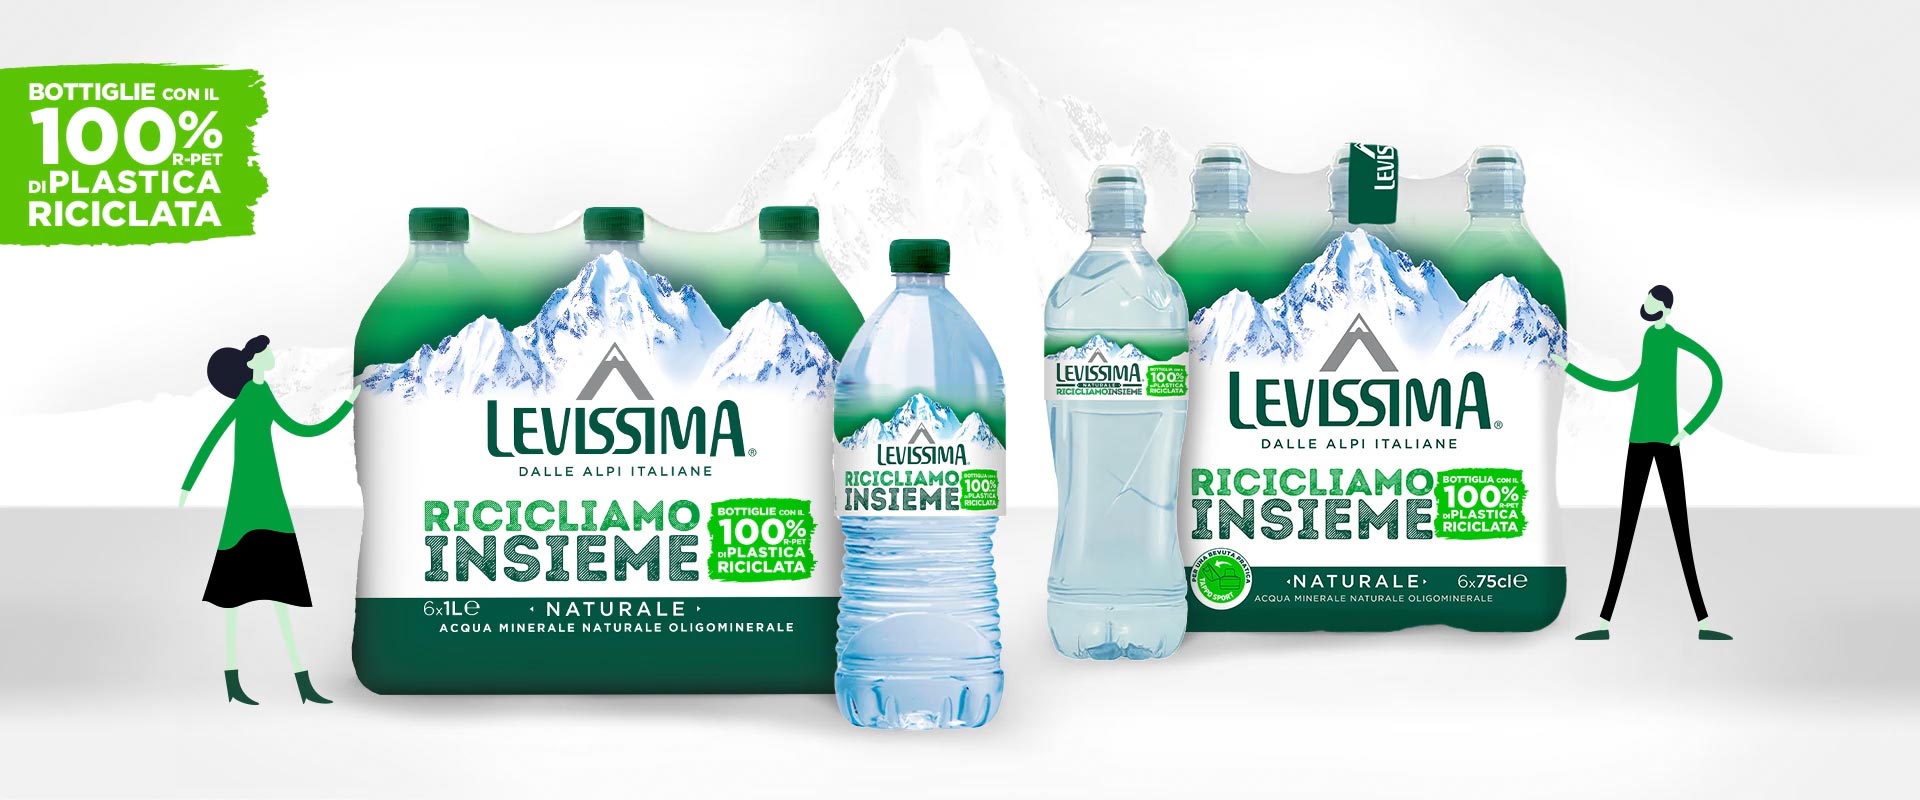 Levissima, le nuove bottiglie con il 100% di plastica riciclata